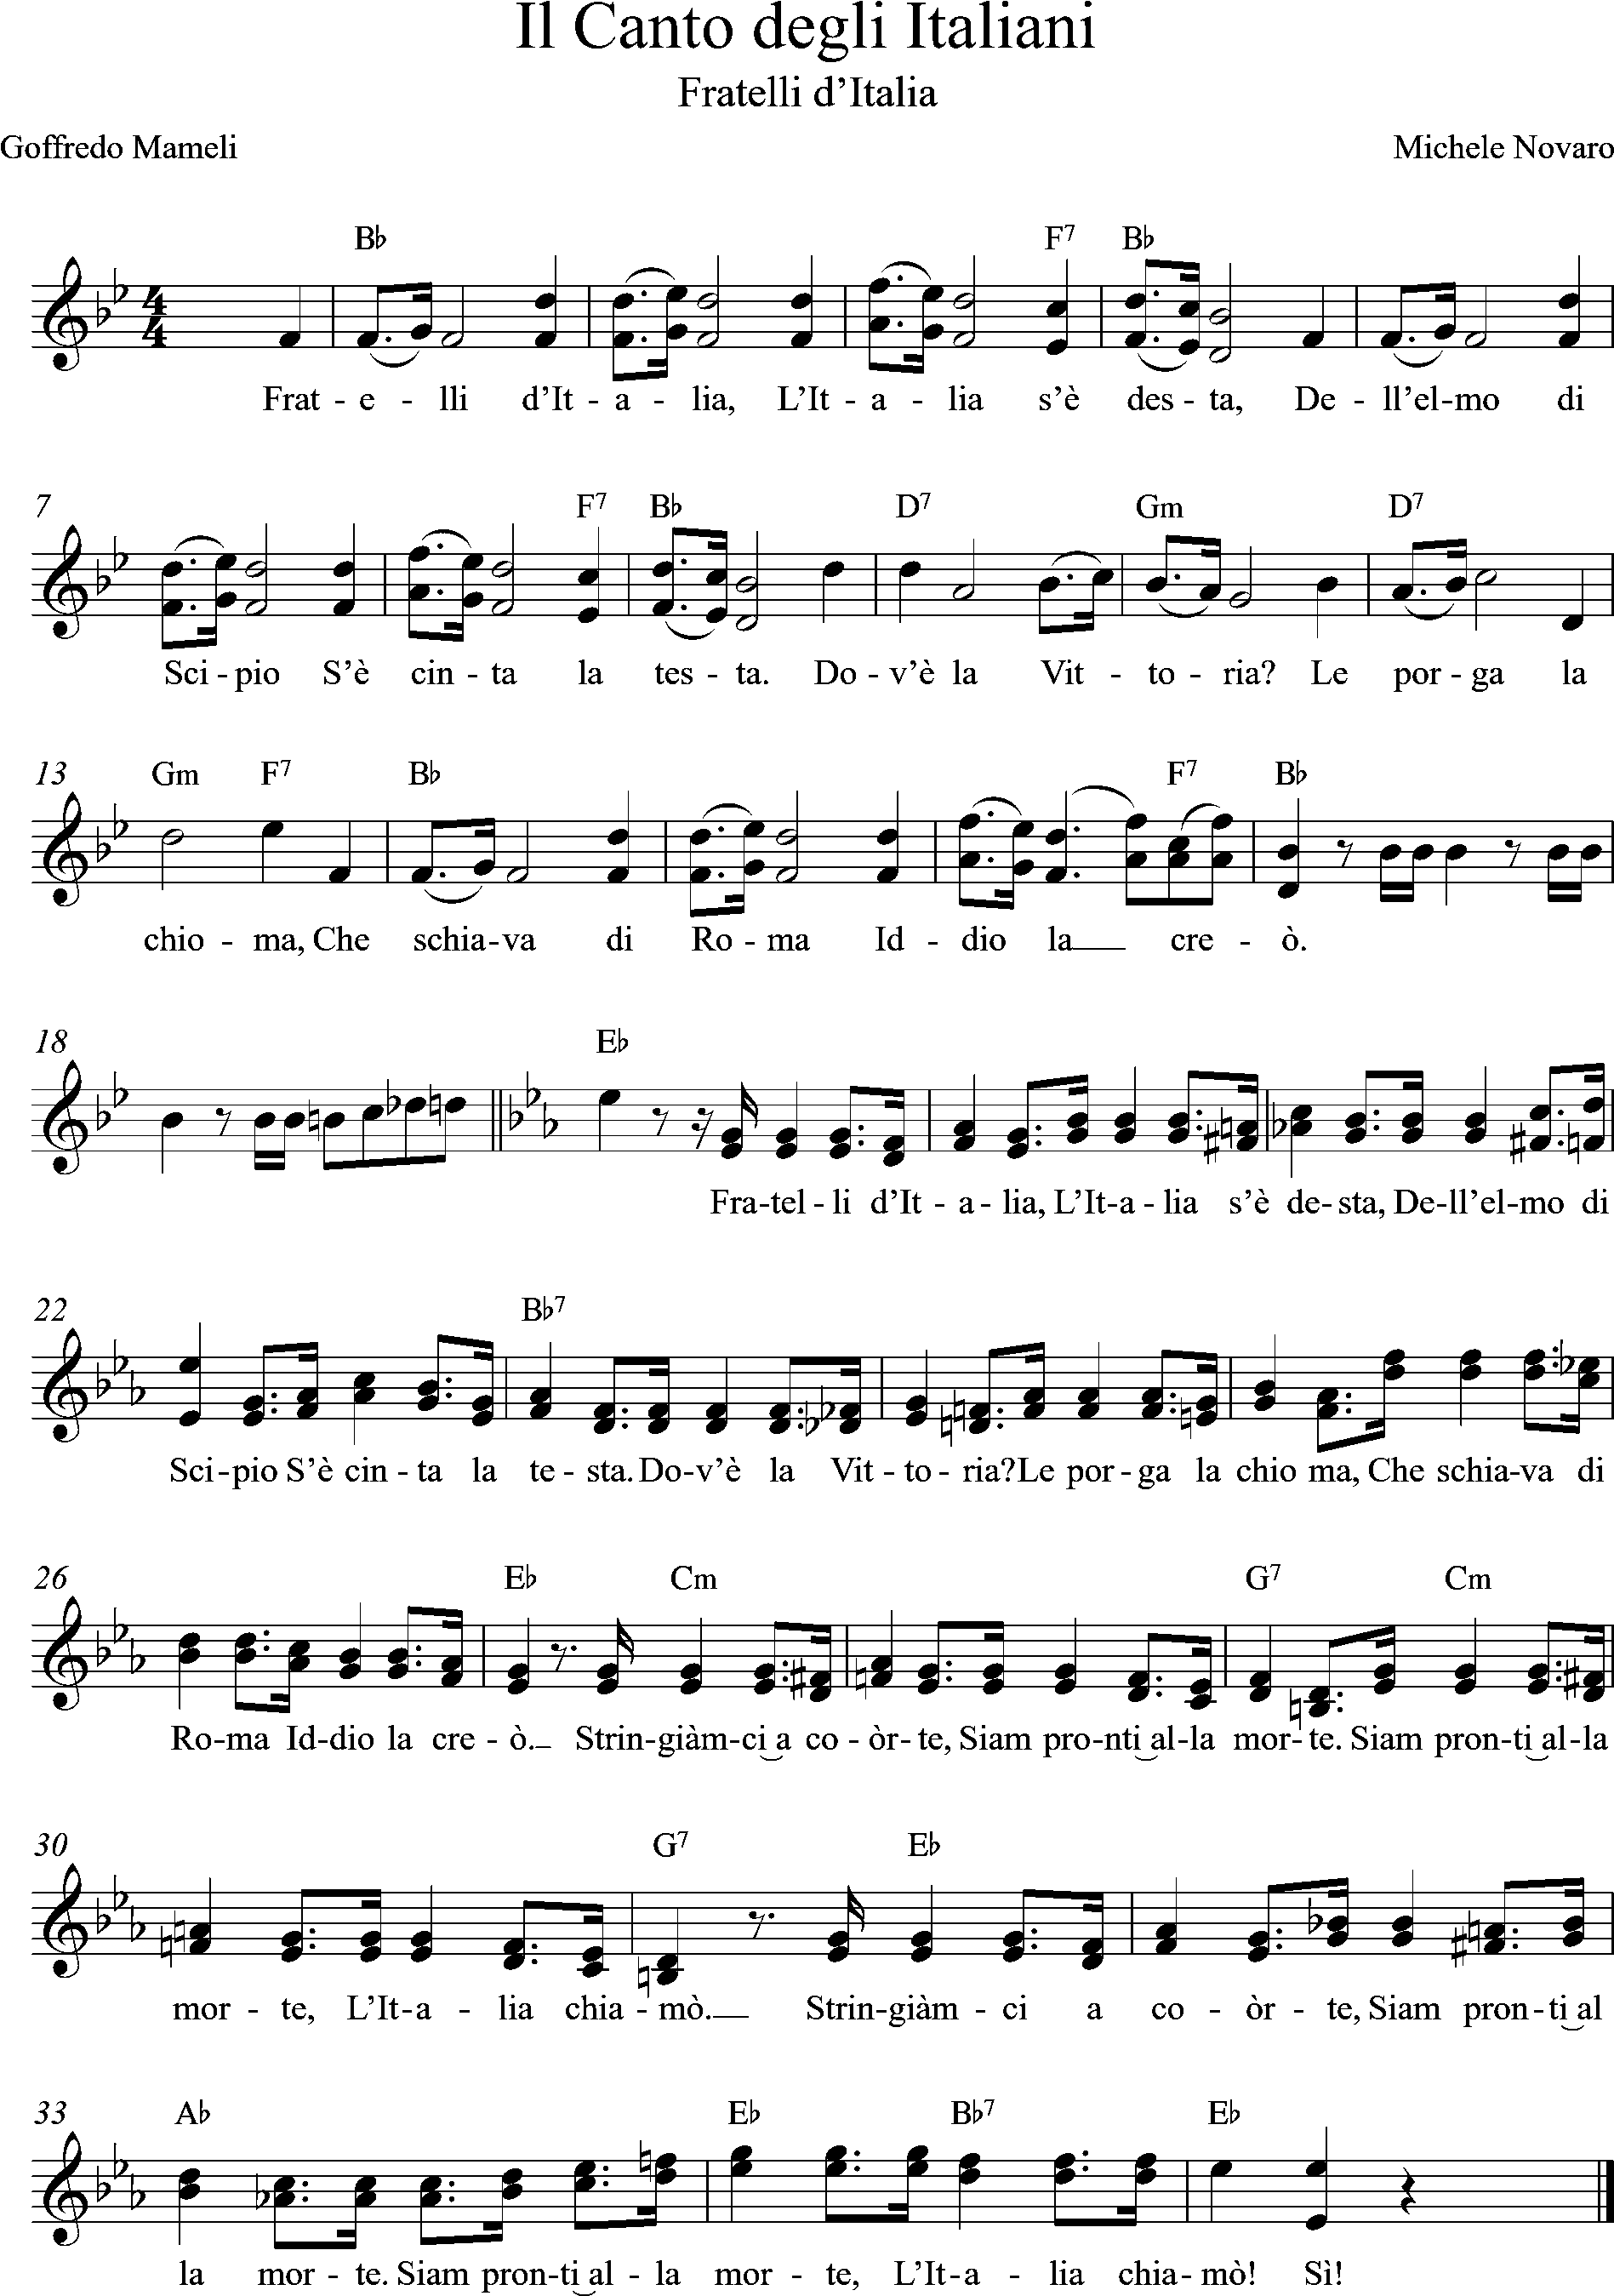 2voices, Bb-Major, Il Canto degli Italiani